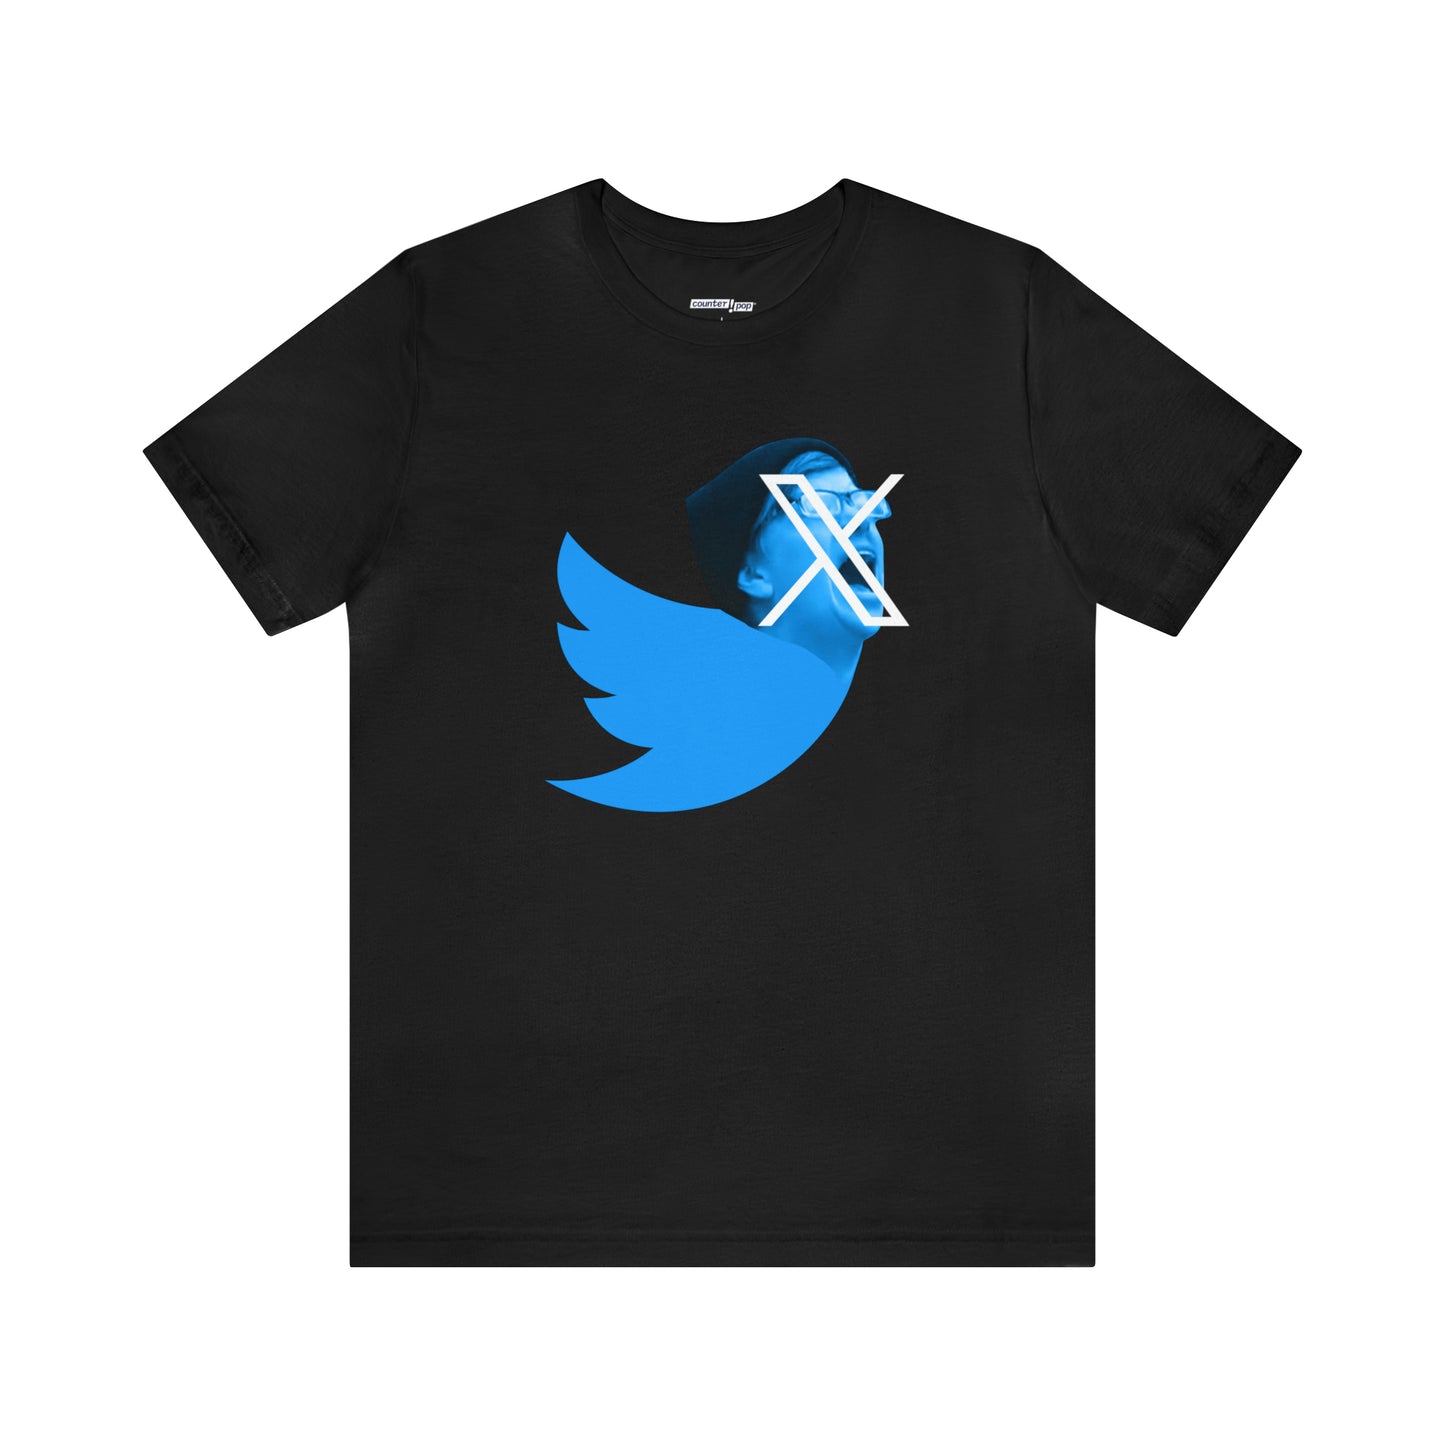 Funny Twitter X Logo Shirt - Elon Musk New Twitter X Logo - Cotton T-shirt